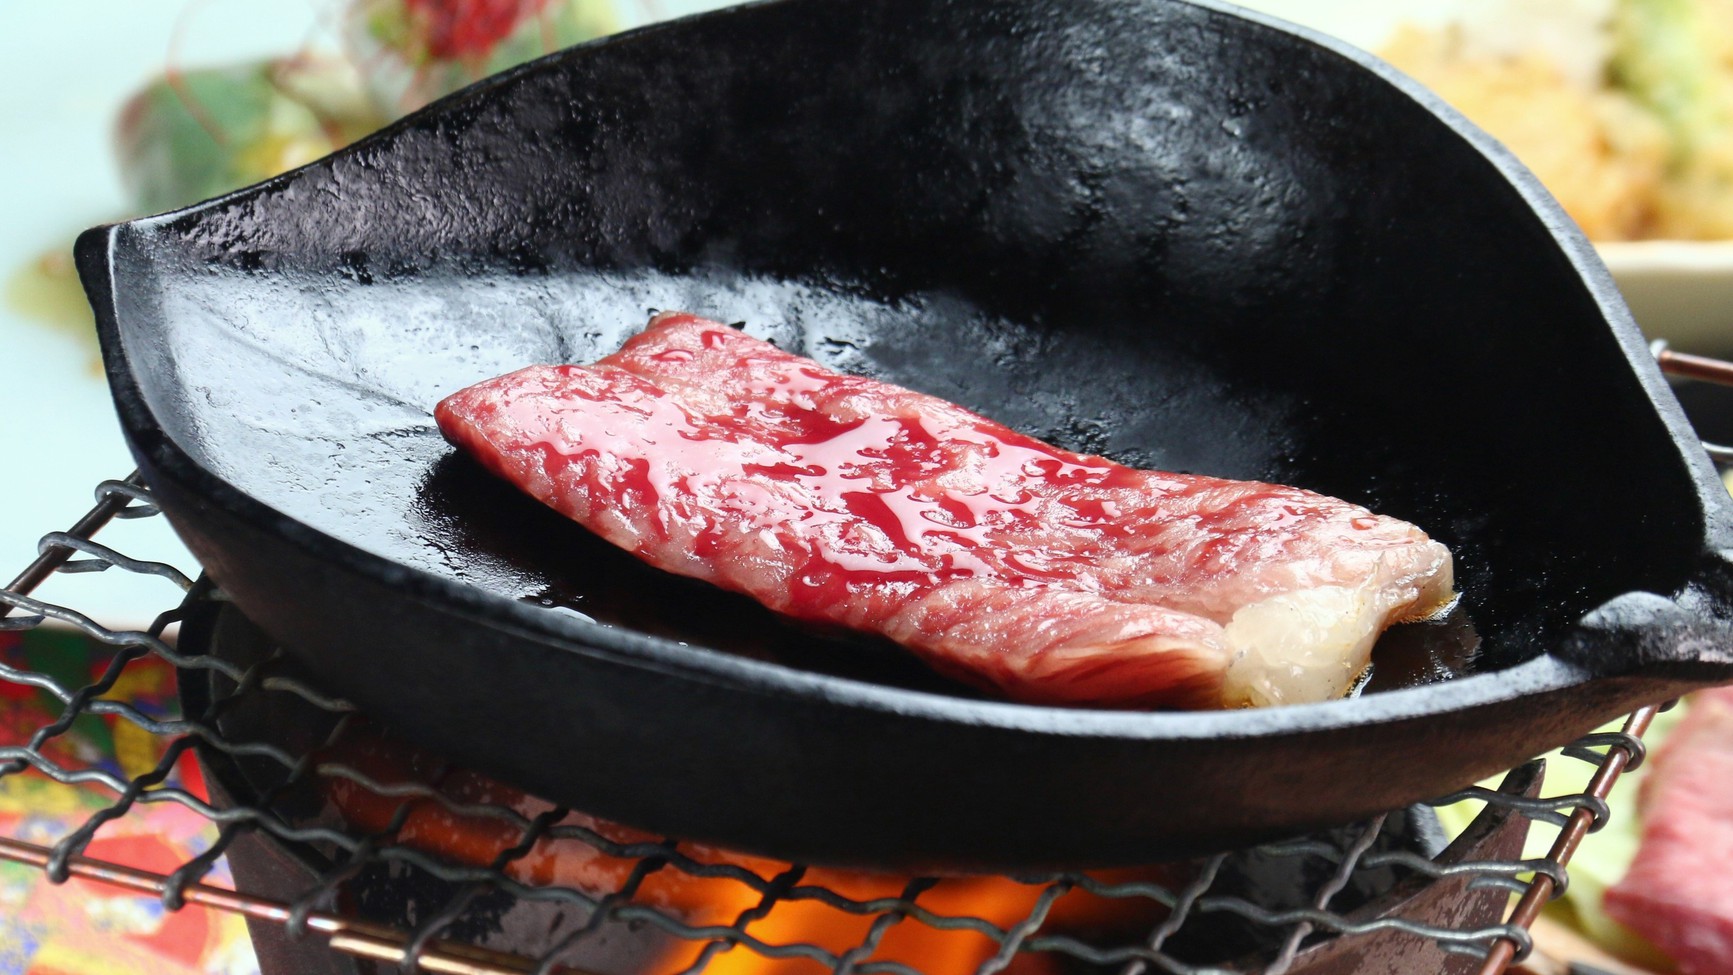 【食事】飛騨牛コースの一例。とろける飛騨牛ステーキはお好みの焼き具合でどうぞ。